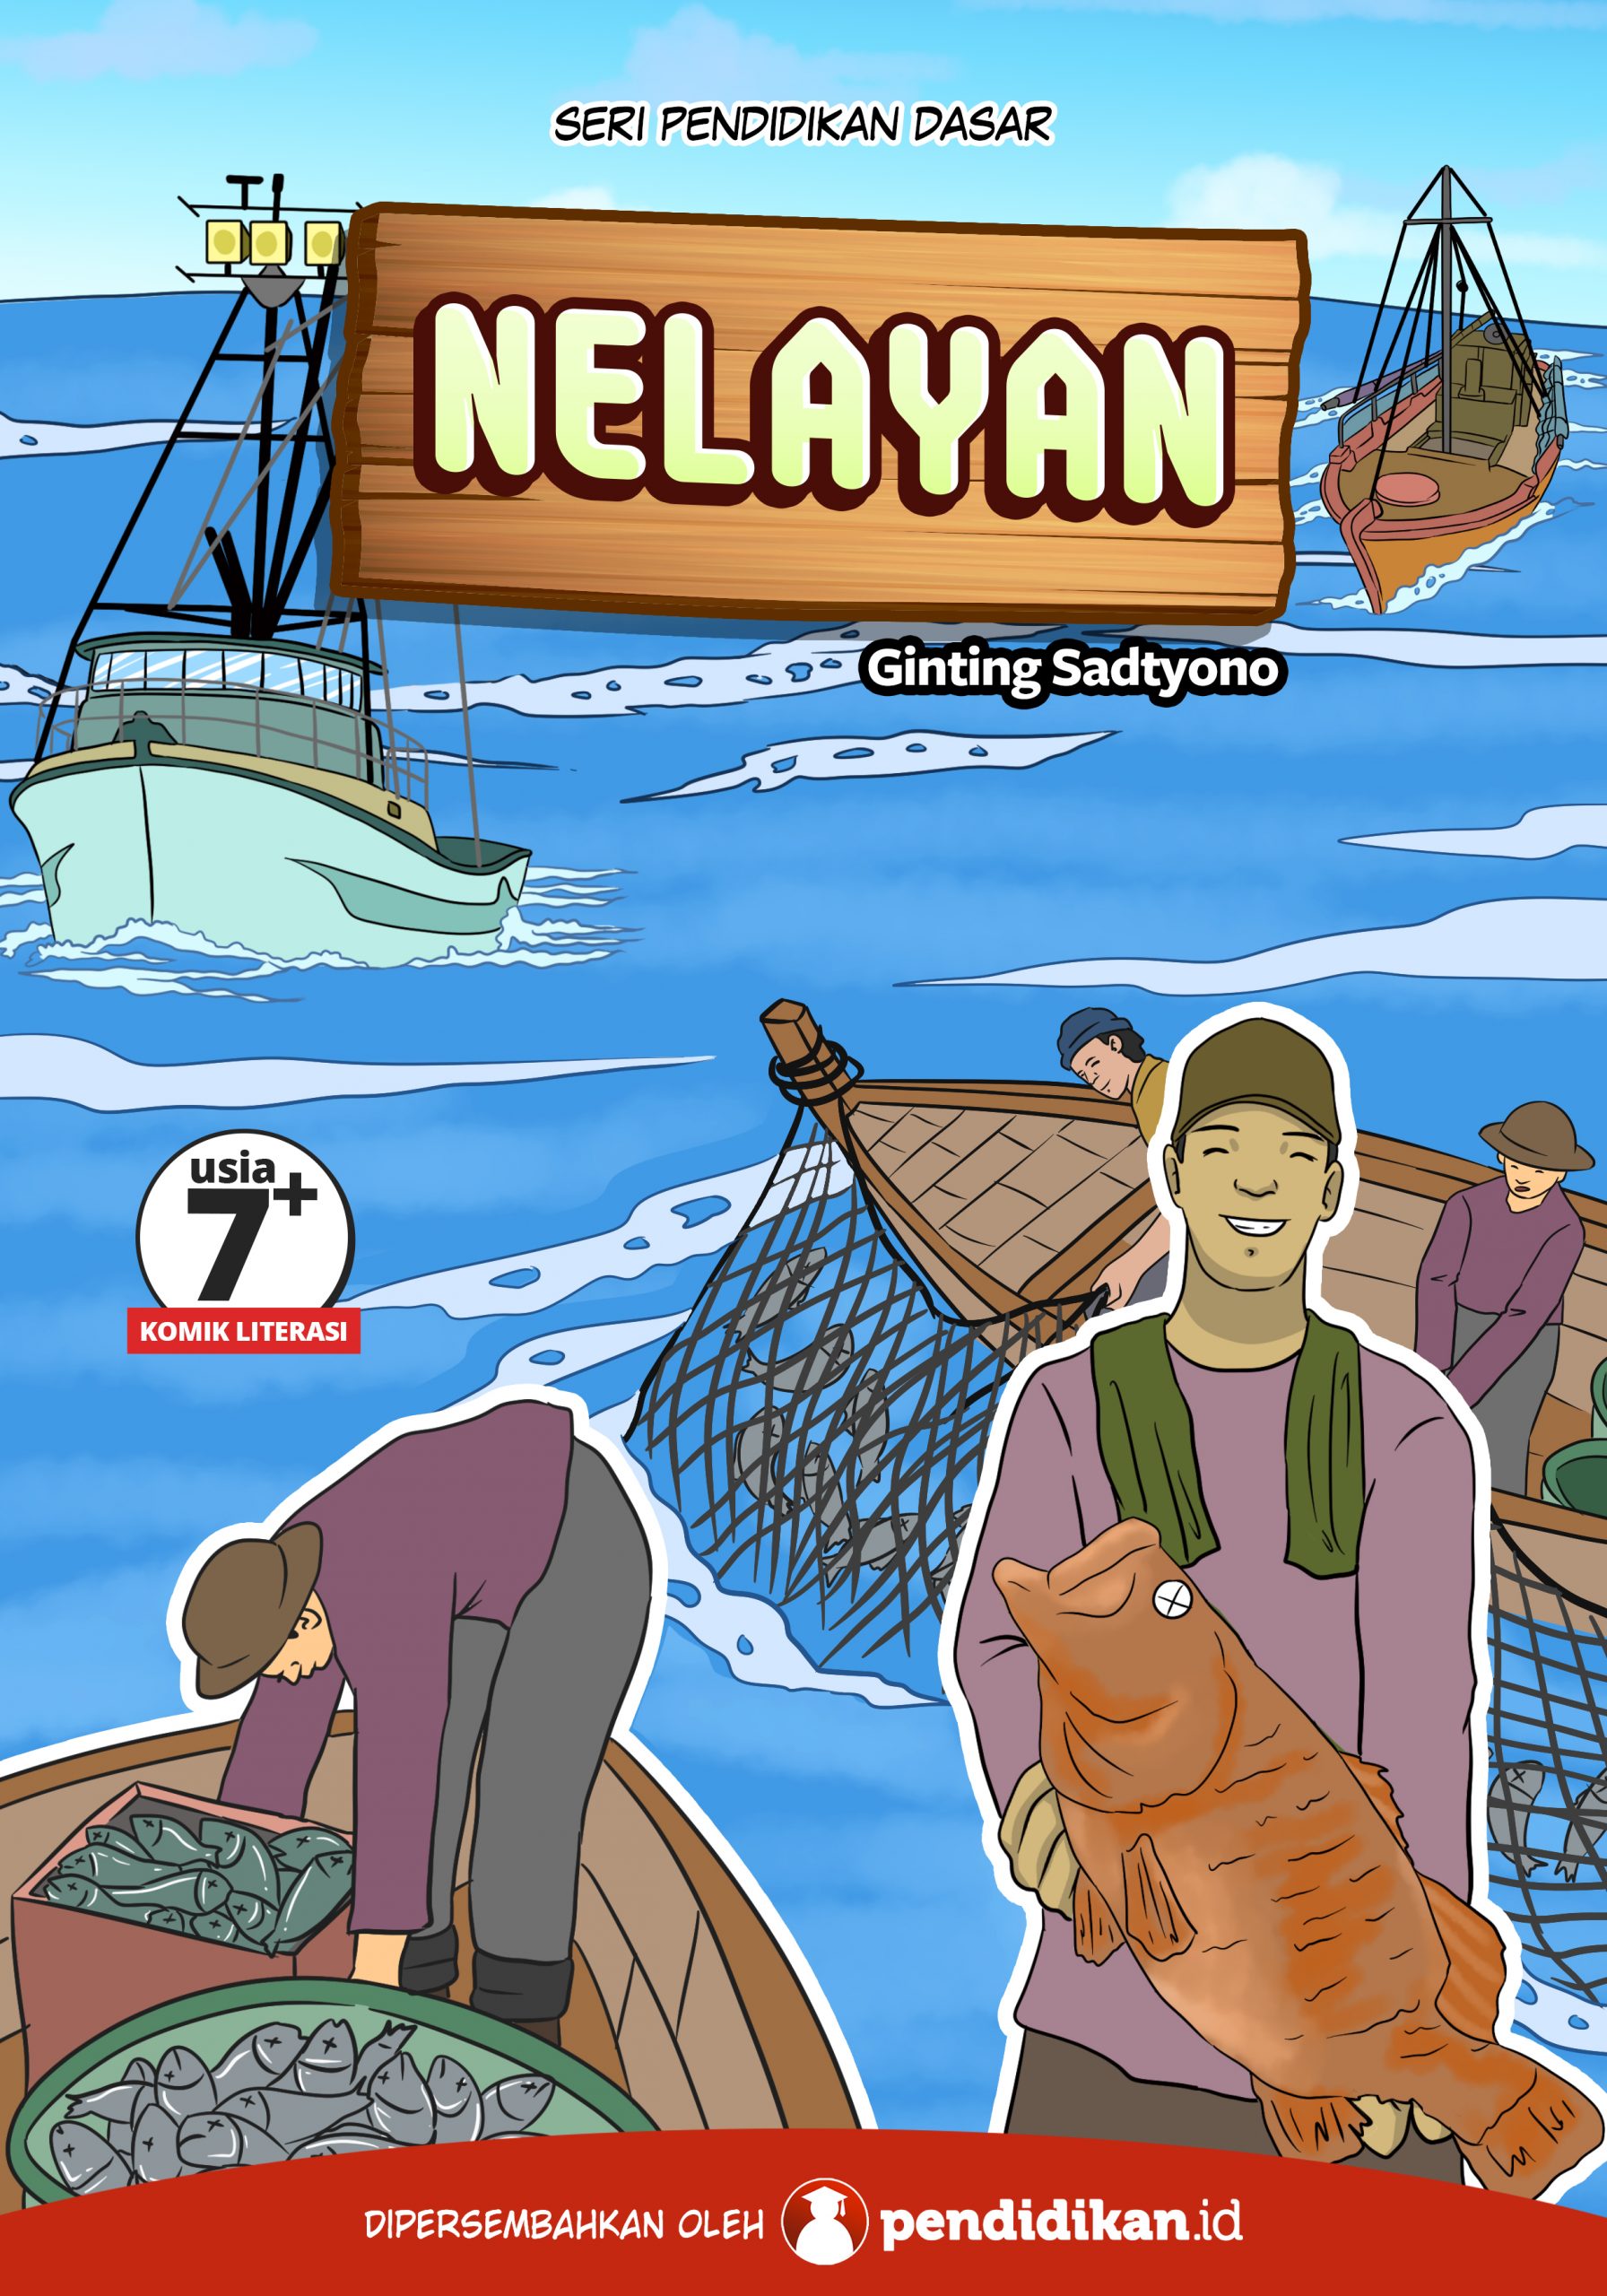 buku bacaan pendidikan dasar nelayan profesi